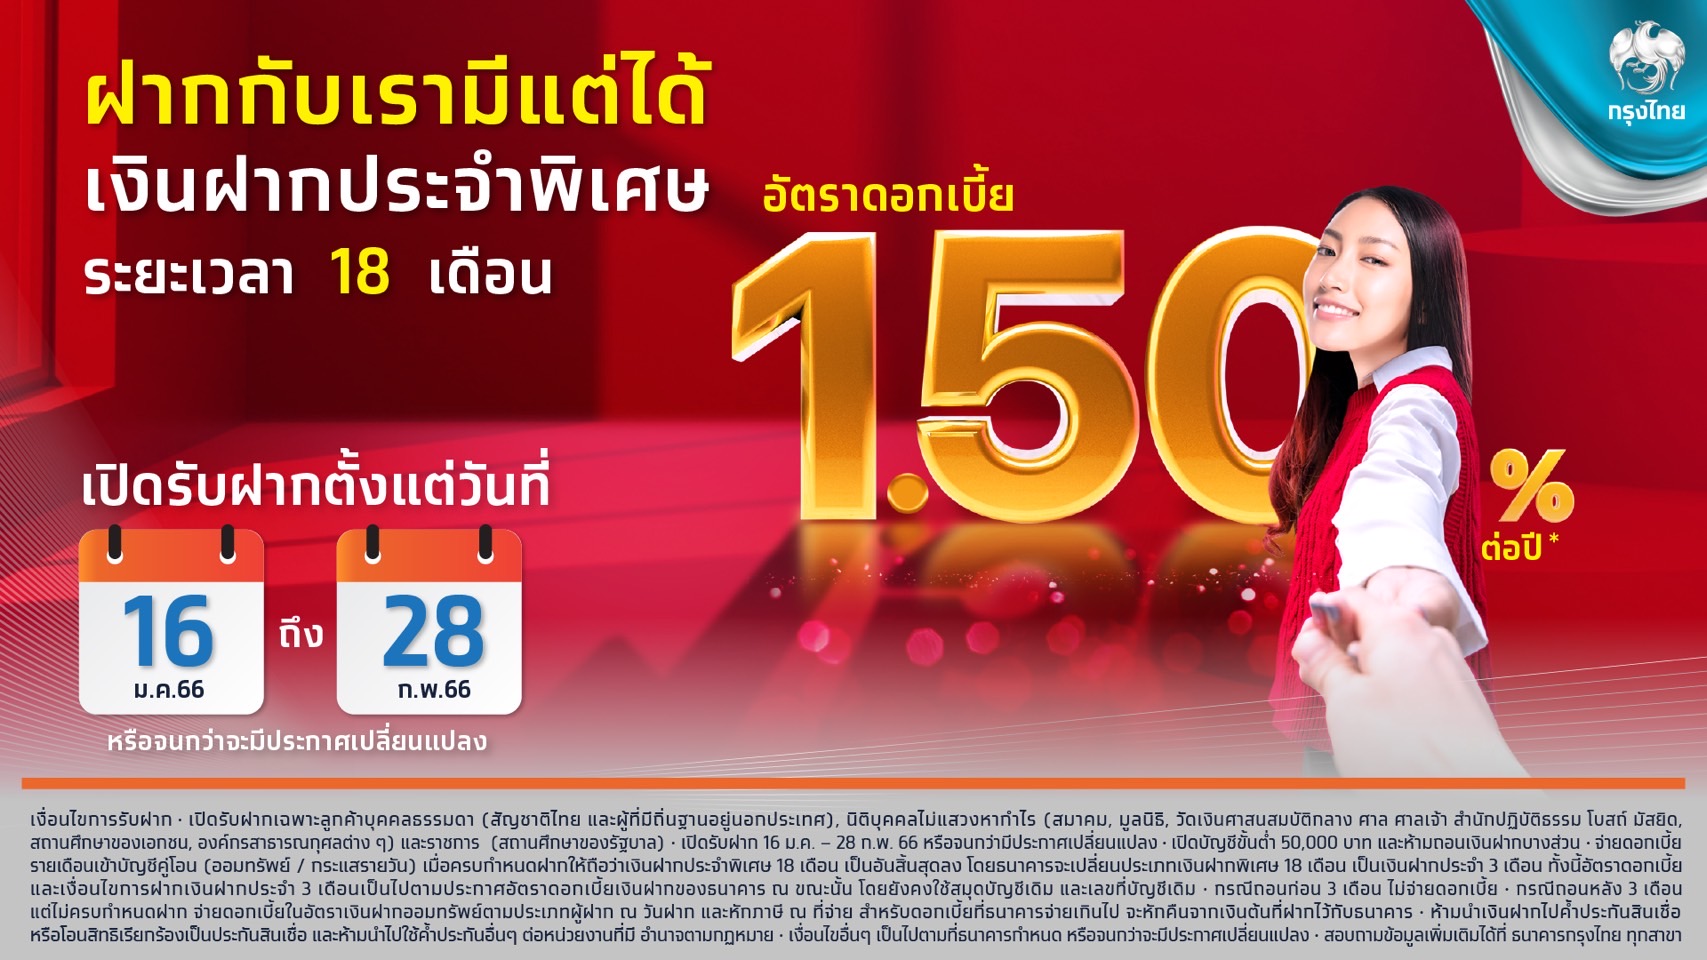 “กรุงไทย” หนุนคนไทยออมเงิน ออกเงินฝากประจำพิเศษ 18 เดือน ดบ.สูง 1.5%